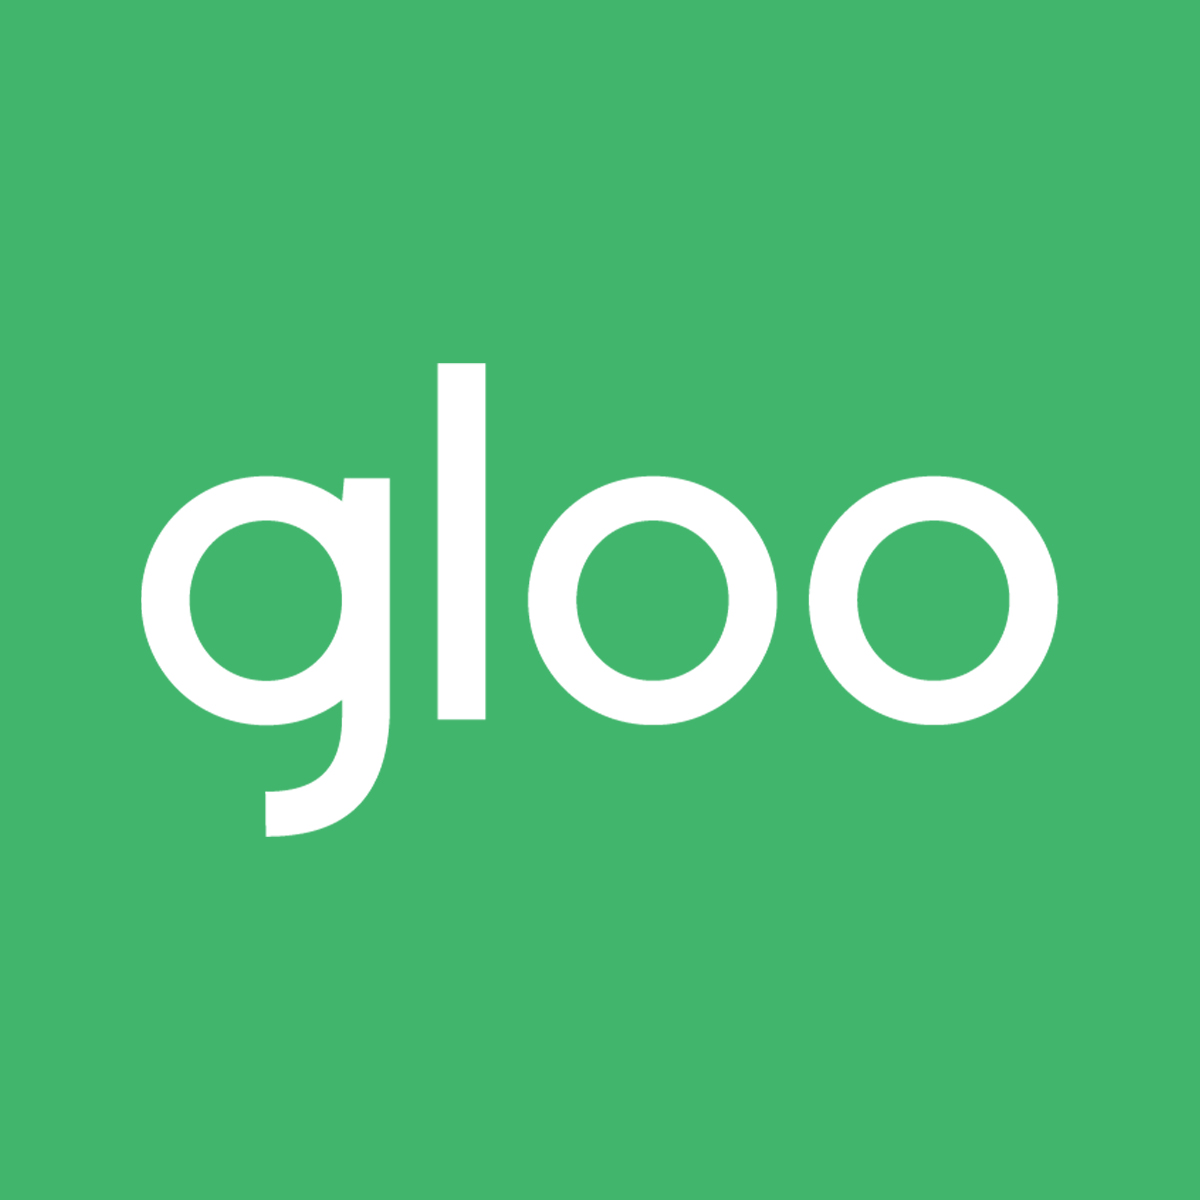 Gloo logo